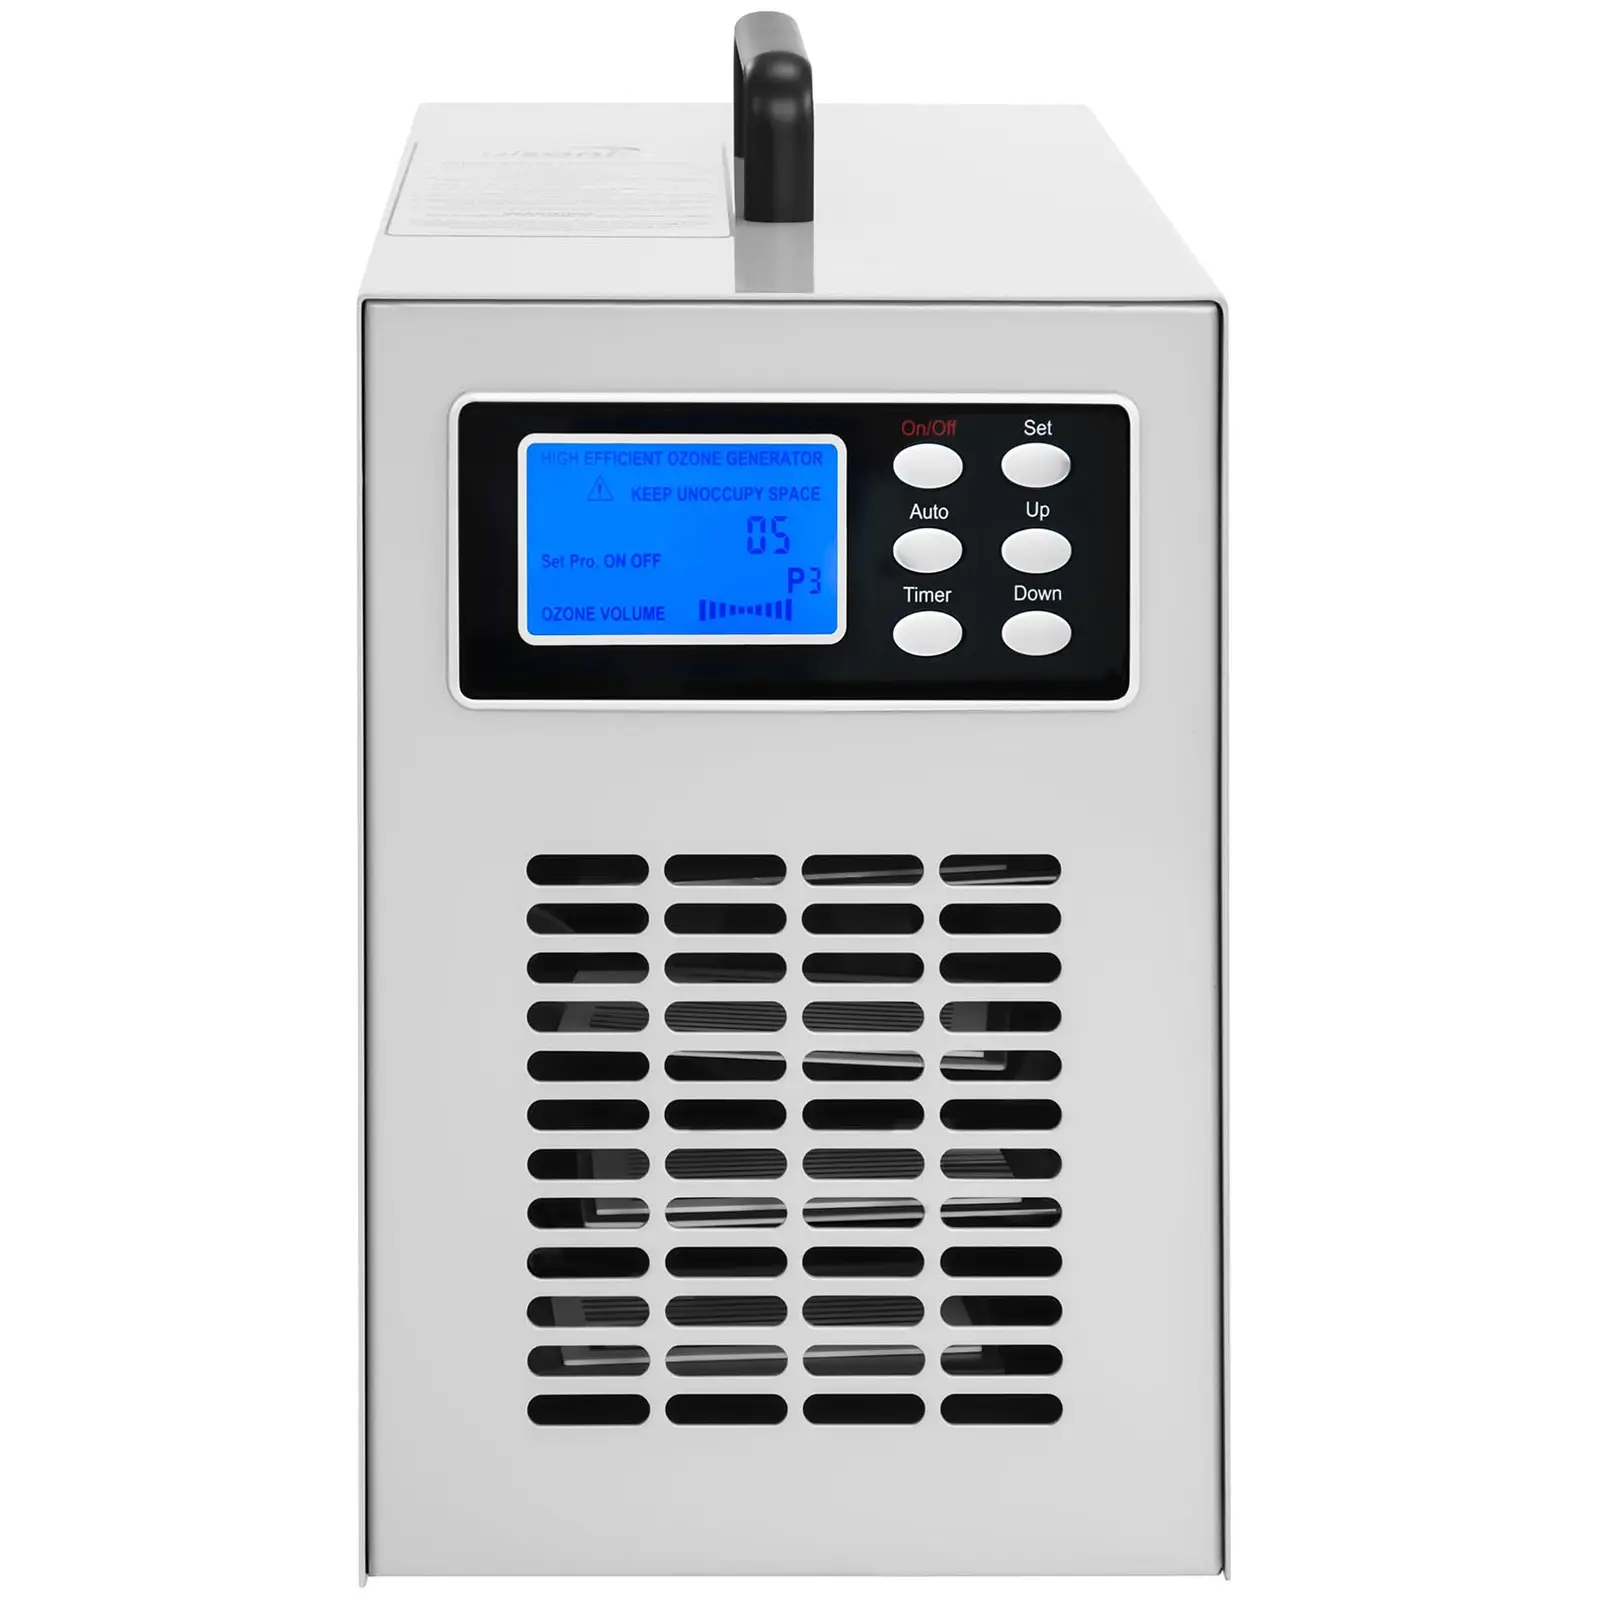 Generator ozonu - 7000 mg/h - 98 W - LCD